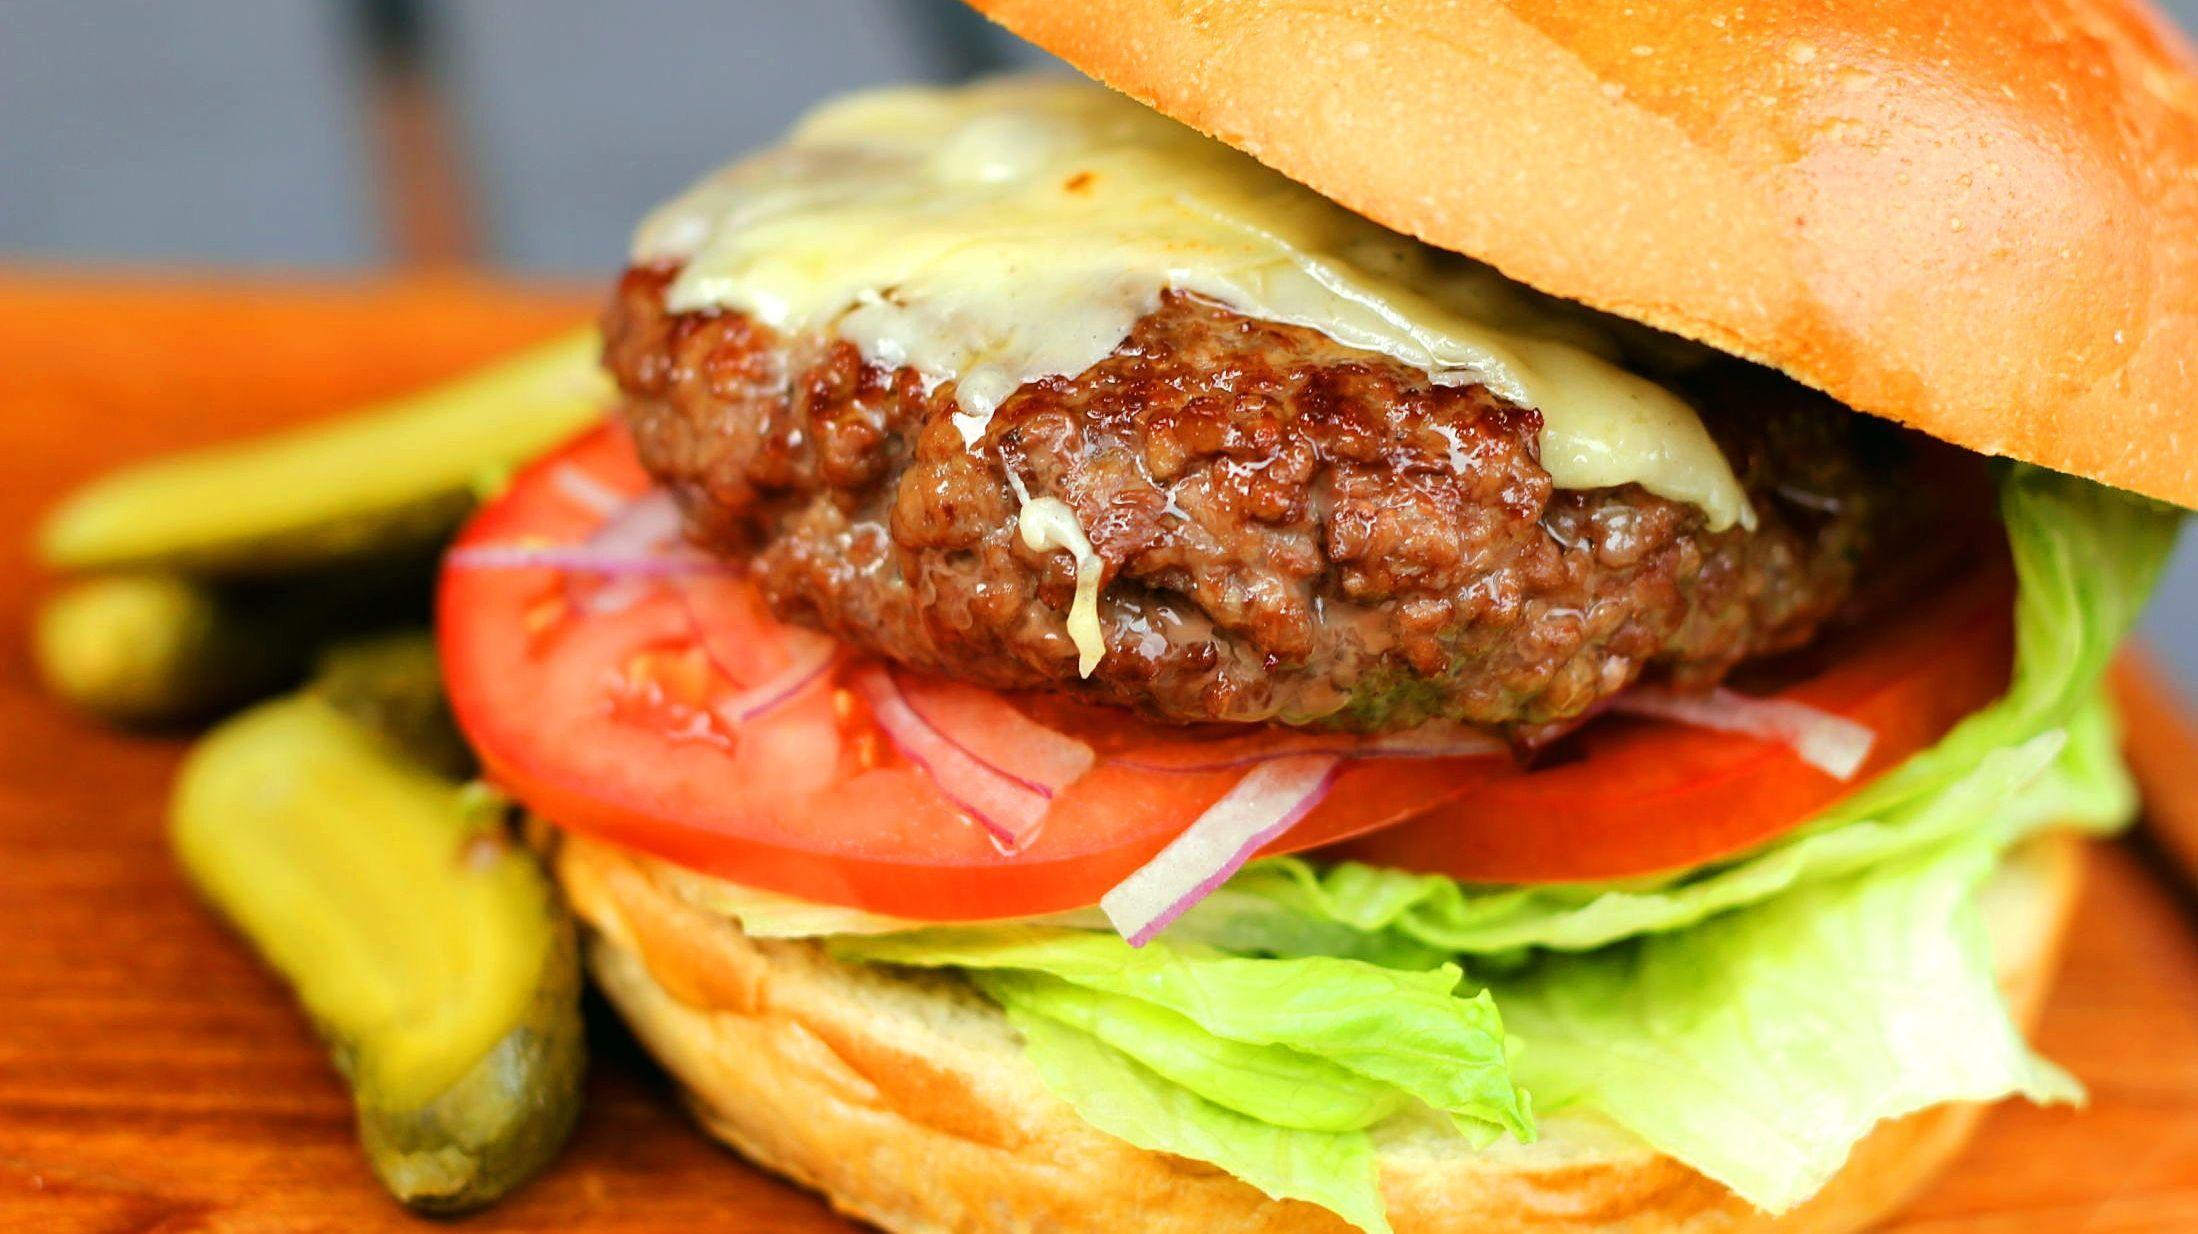 KLASSIKER: Hvis du lager burgeren skikkelig, trenger du ikke all verdens tilbehør. Foto: Jon Krog Pedersen